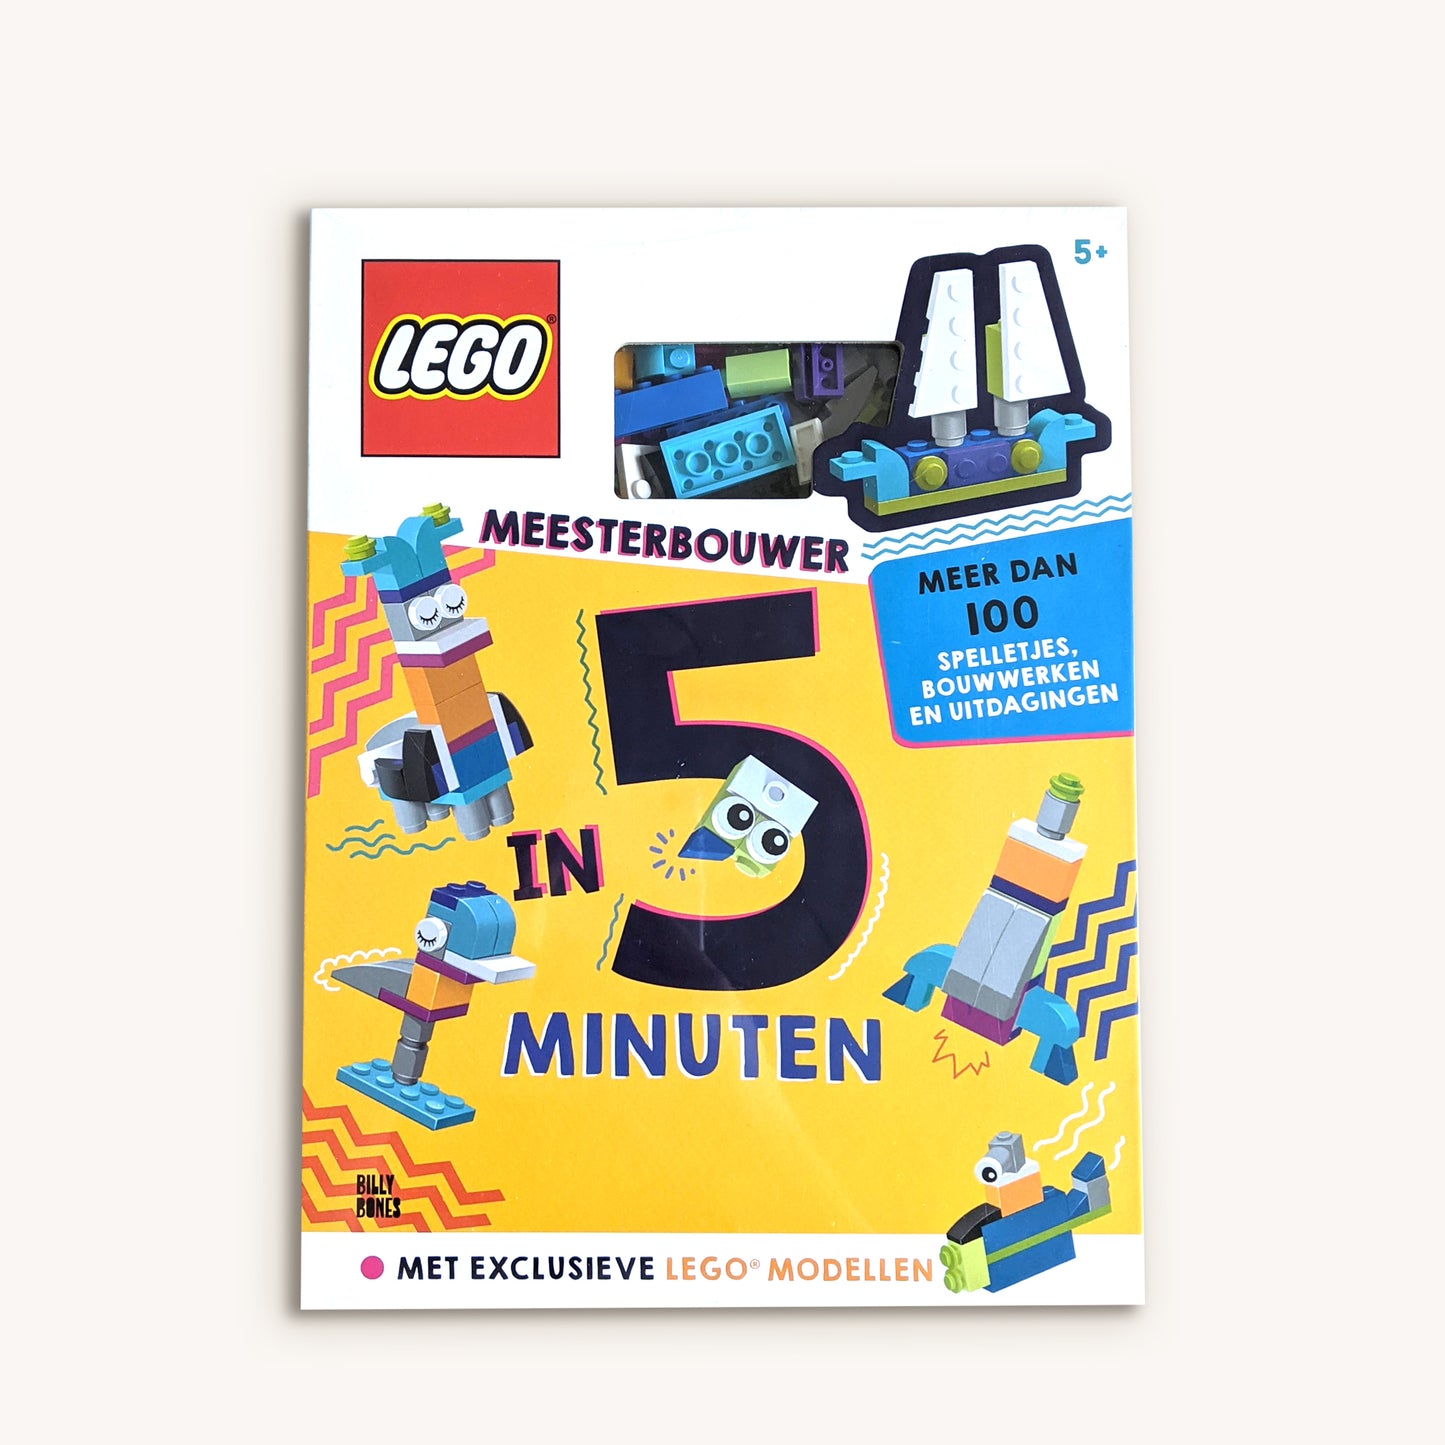 LEGO Meesterbouwer in 5 minuten